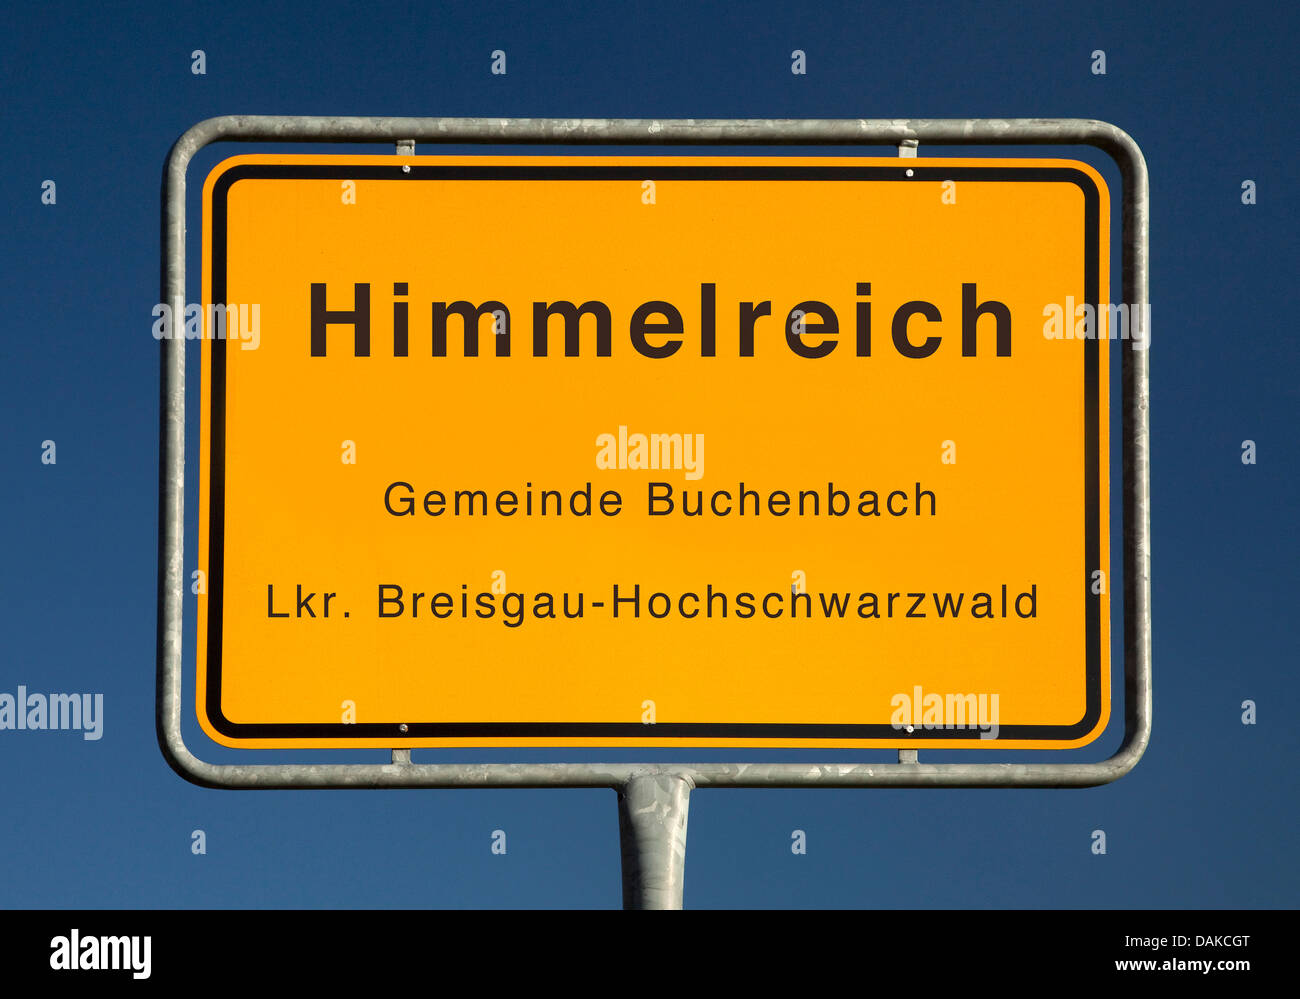 Himmelreich place name sign, Germany, Baden-Wuerttemberg, Breisgau-Hochschwarzwald, Himmelreich Stock Photo